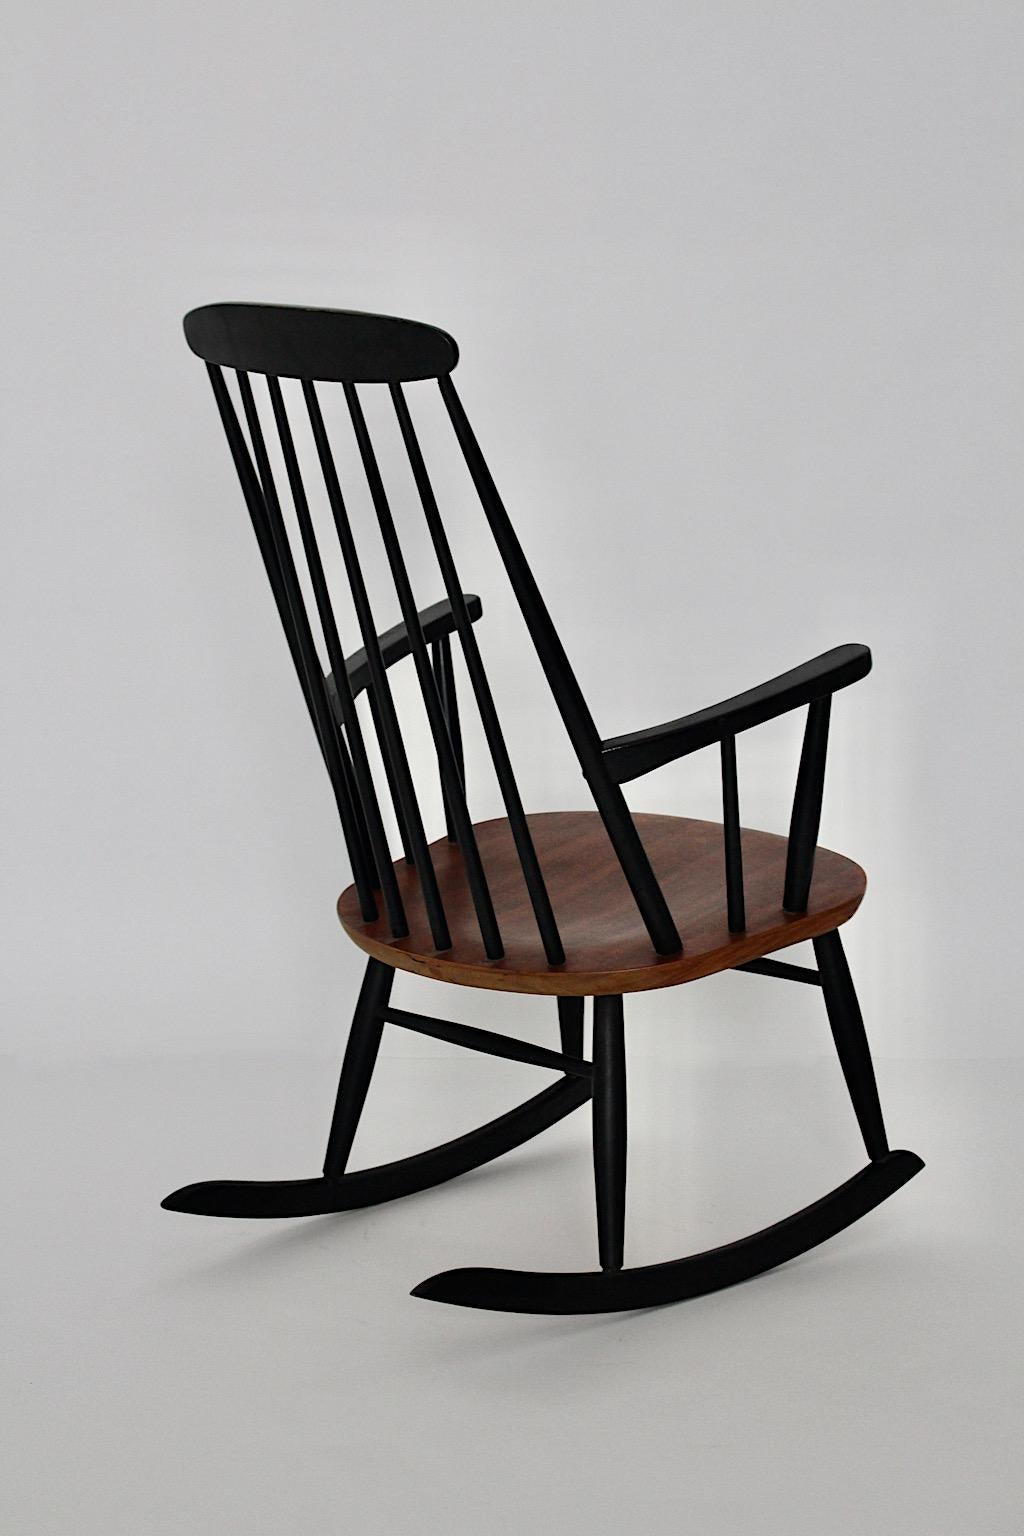 20th Century Scandinavian Modern Vintage Black Brown Wood Rocking Chair Ilmari Tapiovaara For Sale